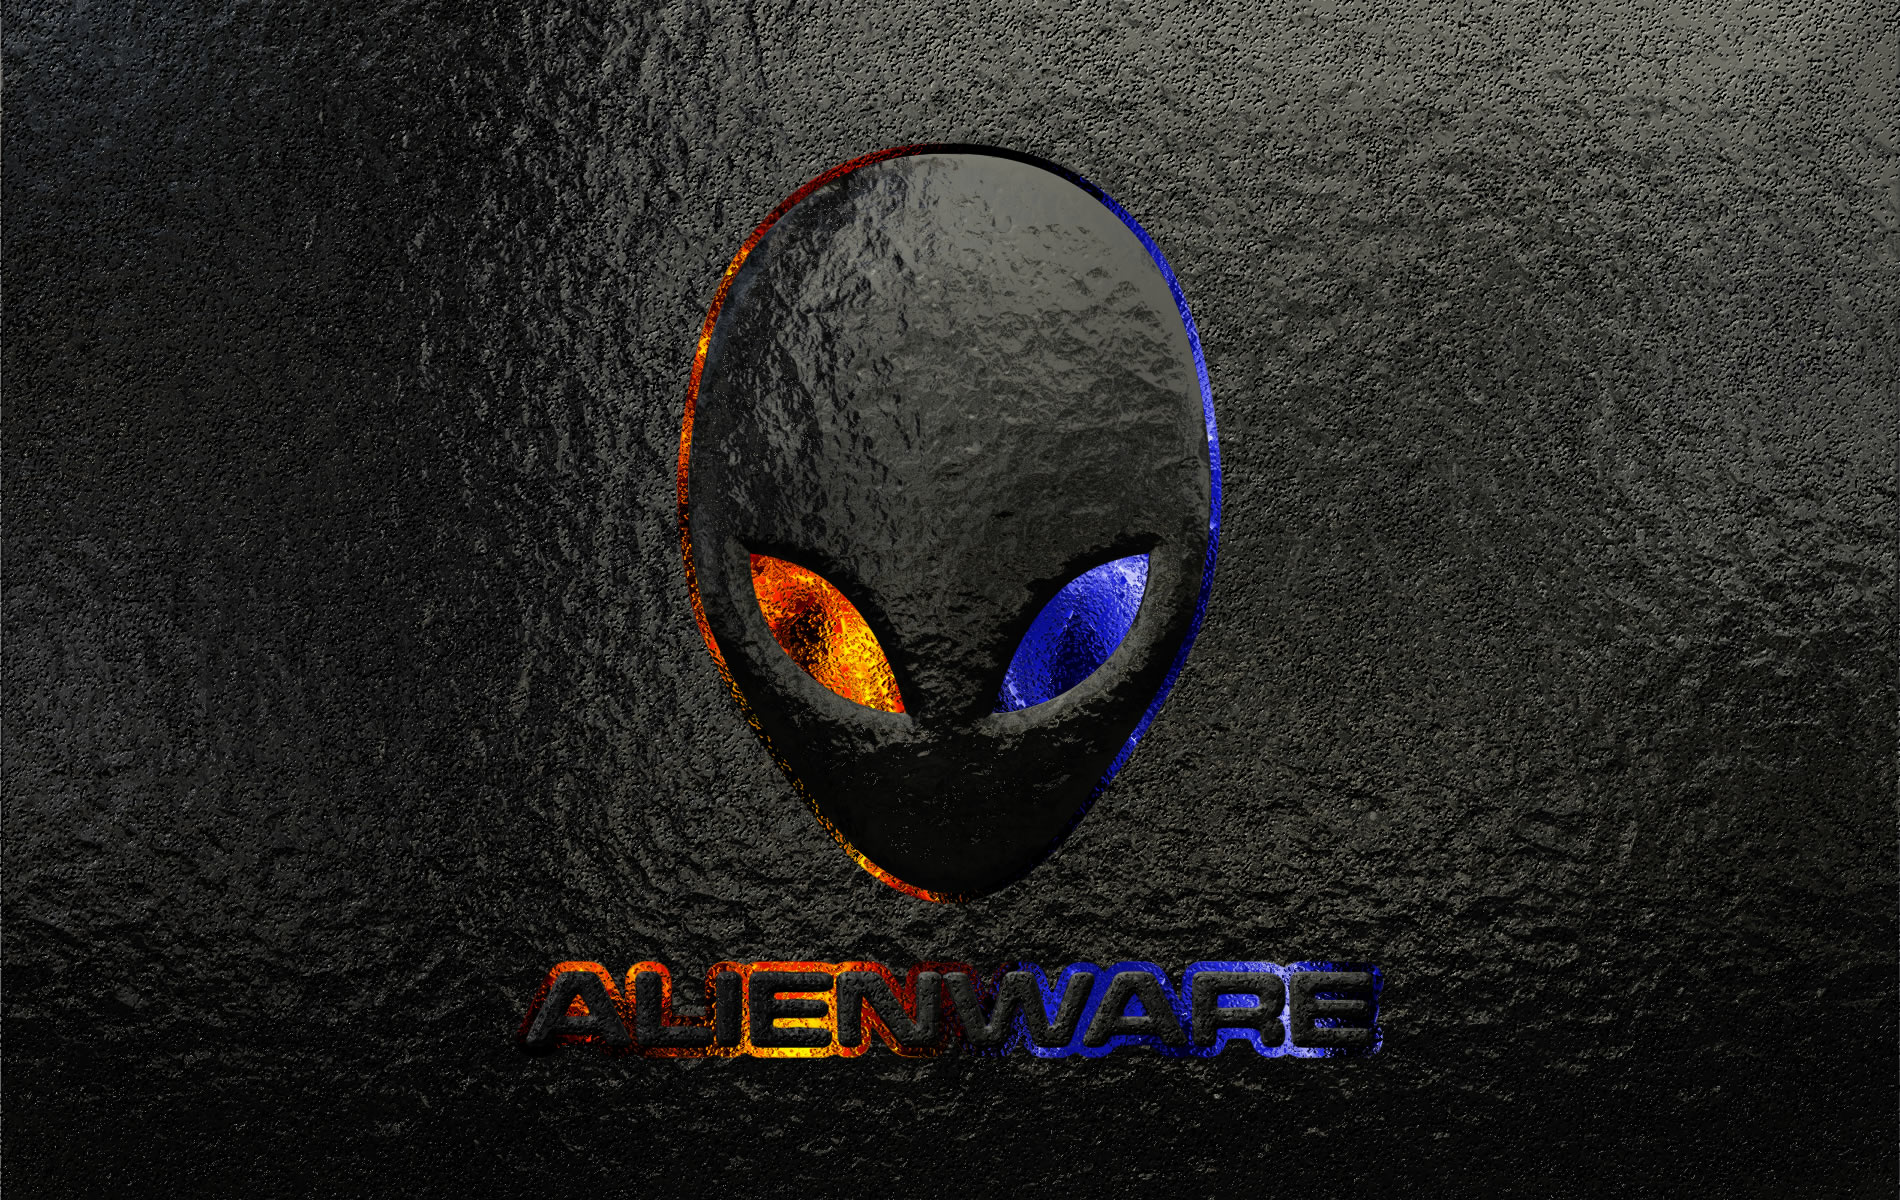 alienware, technology, logo